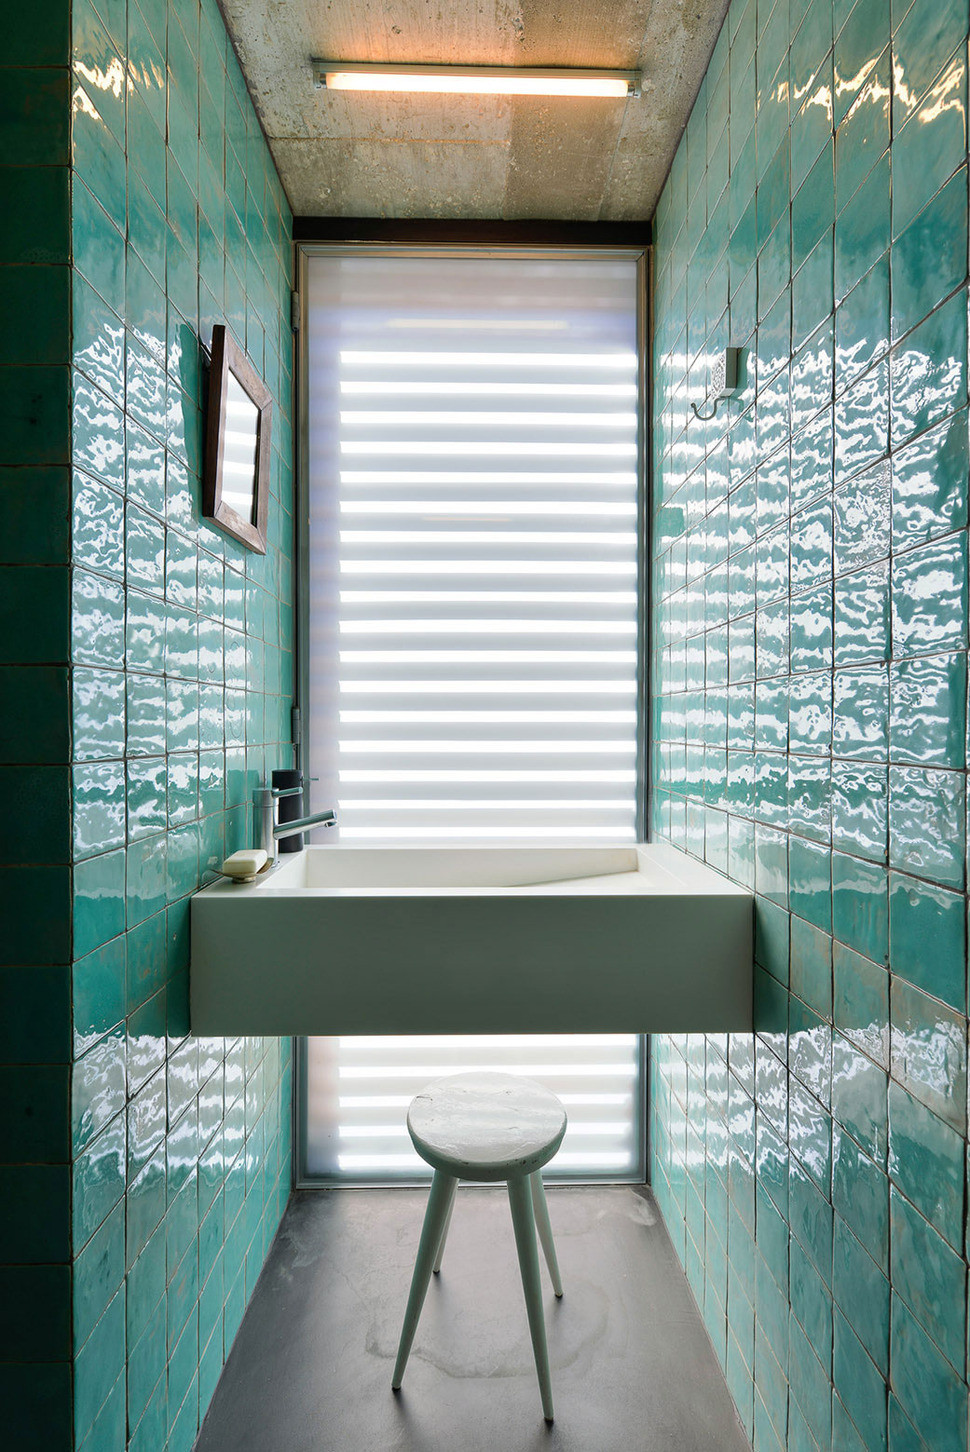 Bathroom Shower Floor Tile Ideas
 Top 10 Tile Design Ideas for a Modern Bathroom for 2015